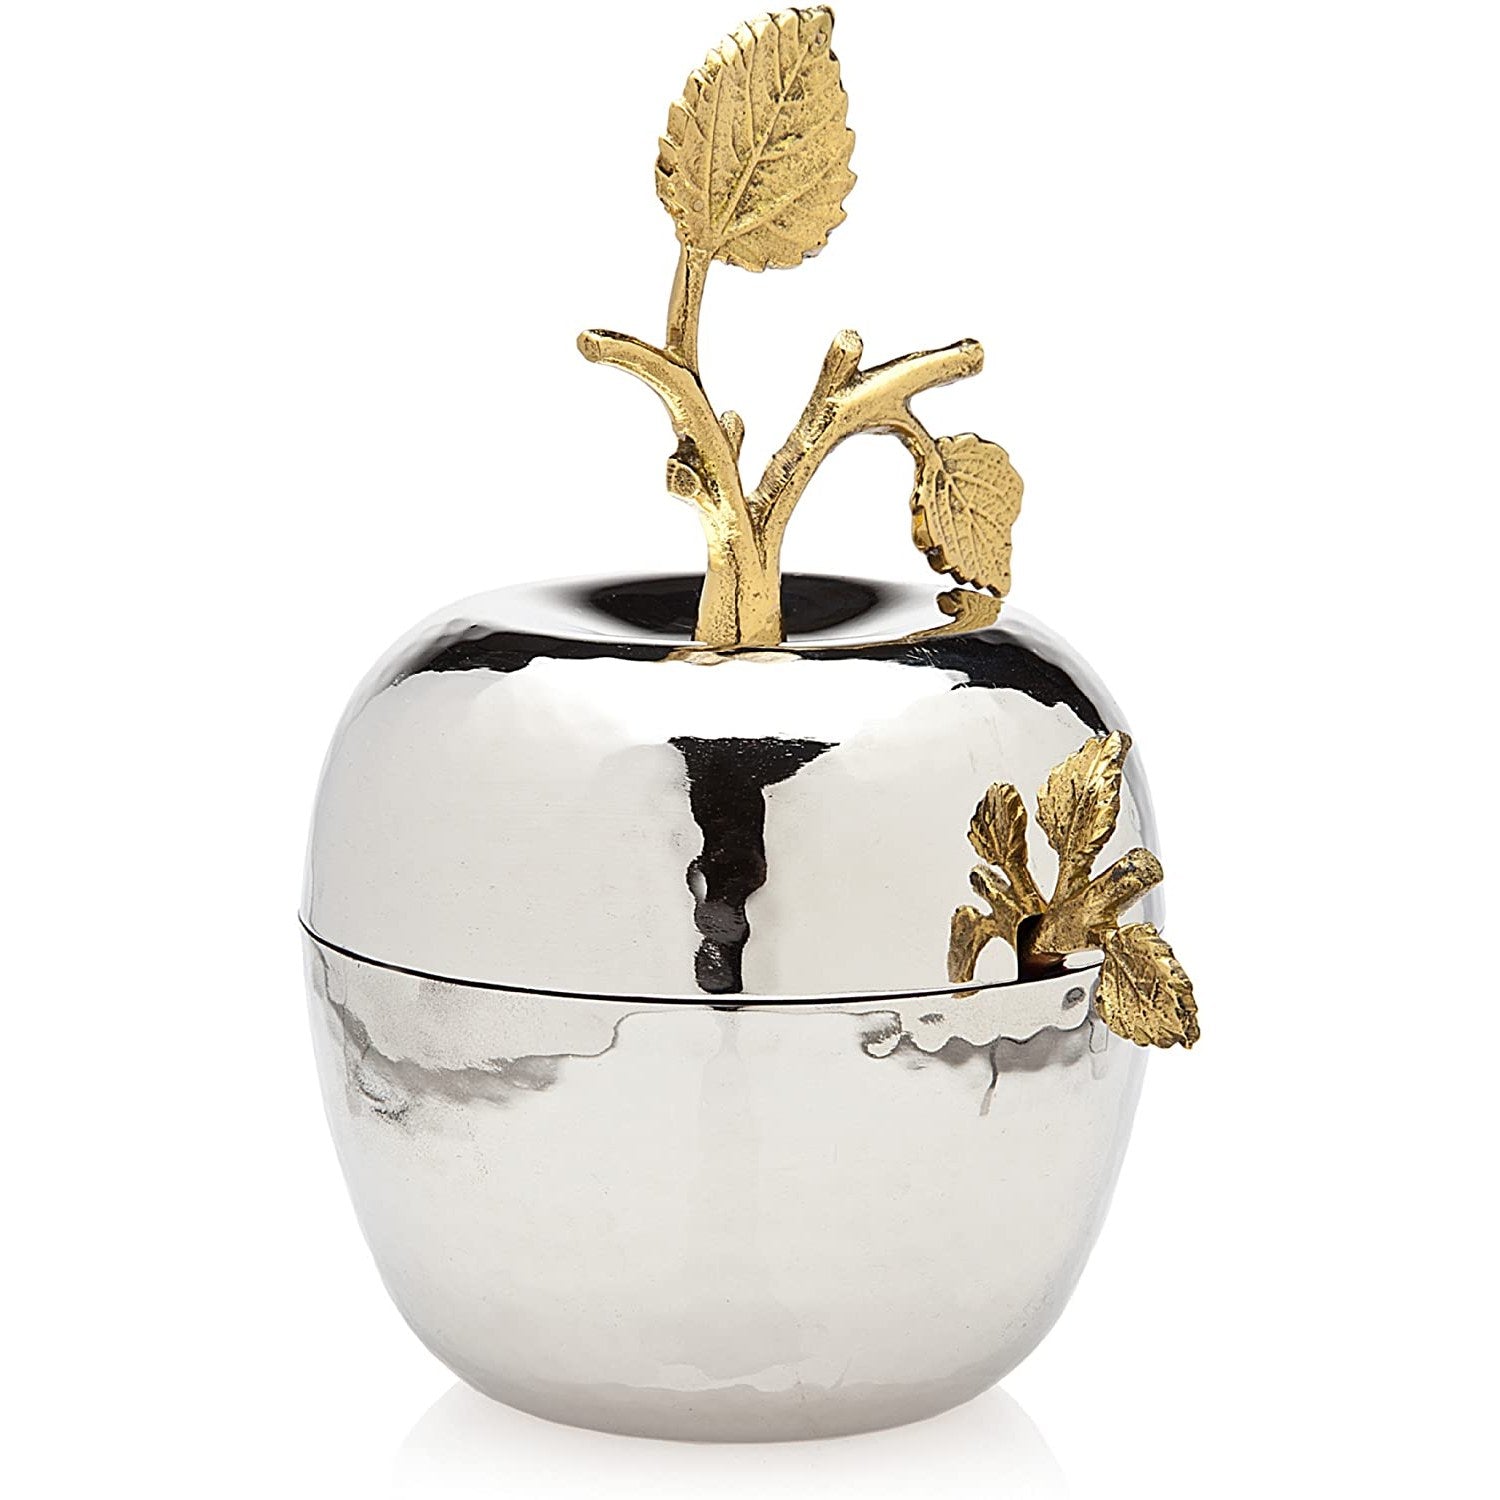 Godinger Leaf Design Apple Jam Jar Spoon by Godinger